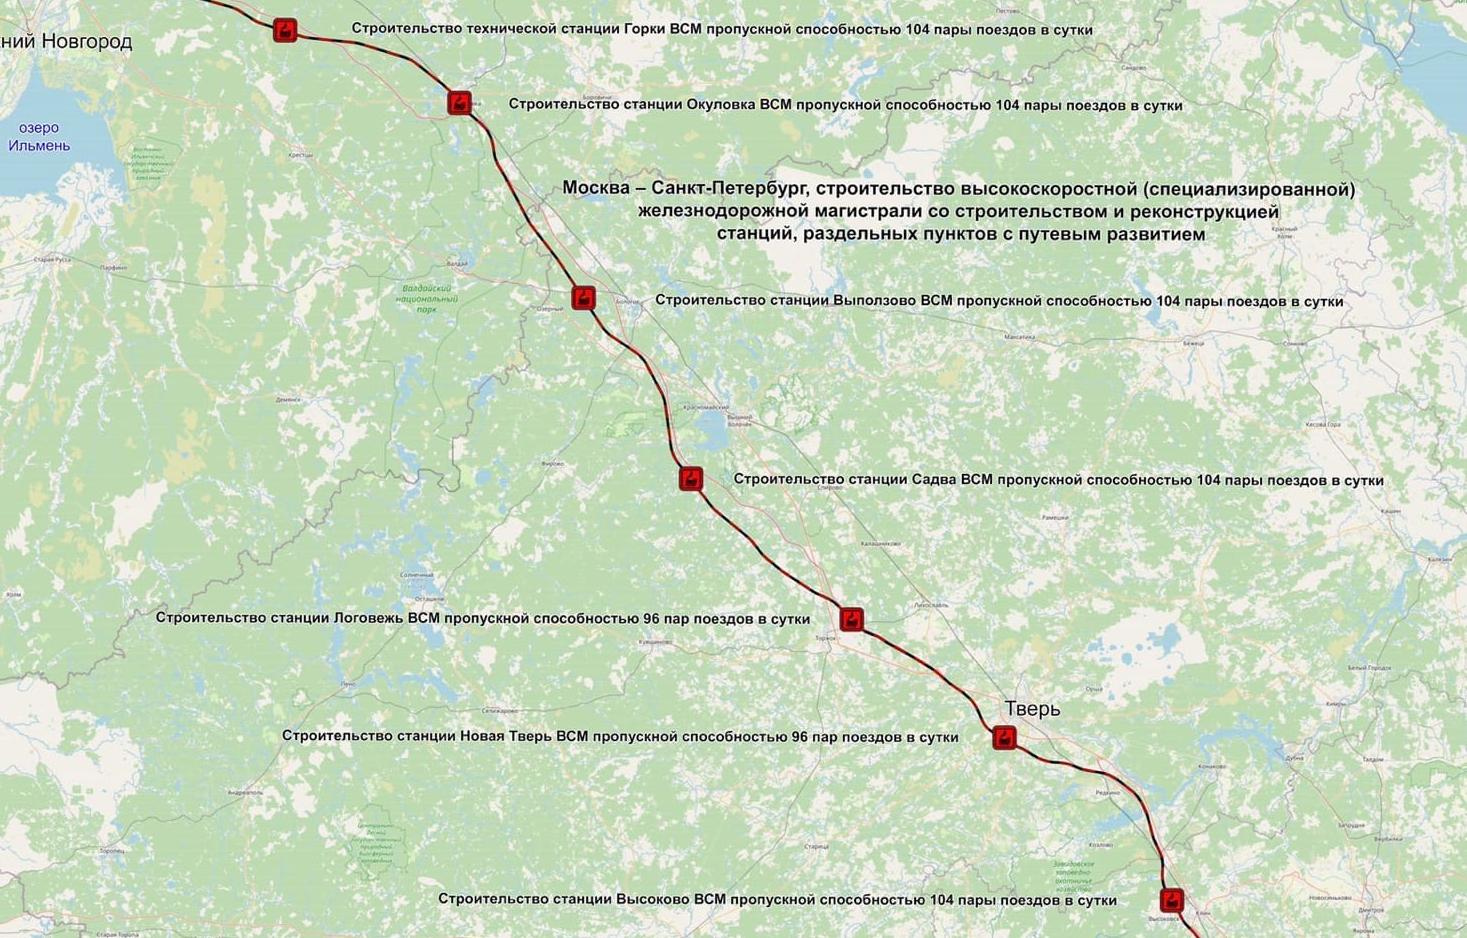 Началась процедура изъятия участков под Тверью для высокоскоростной железнодорожной магистрали Санкт-Петербург — Москва